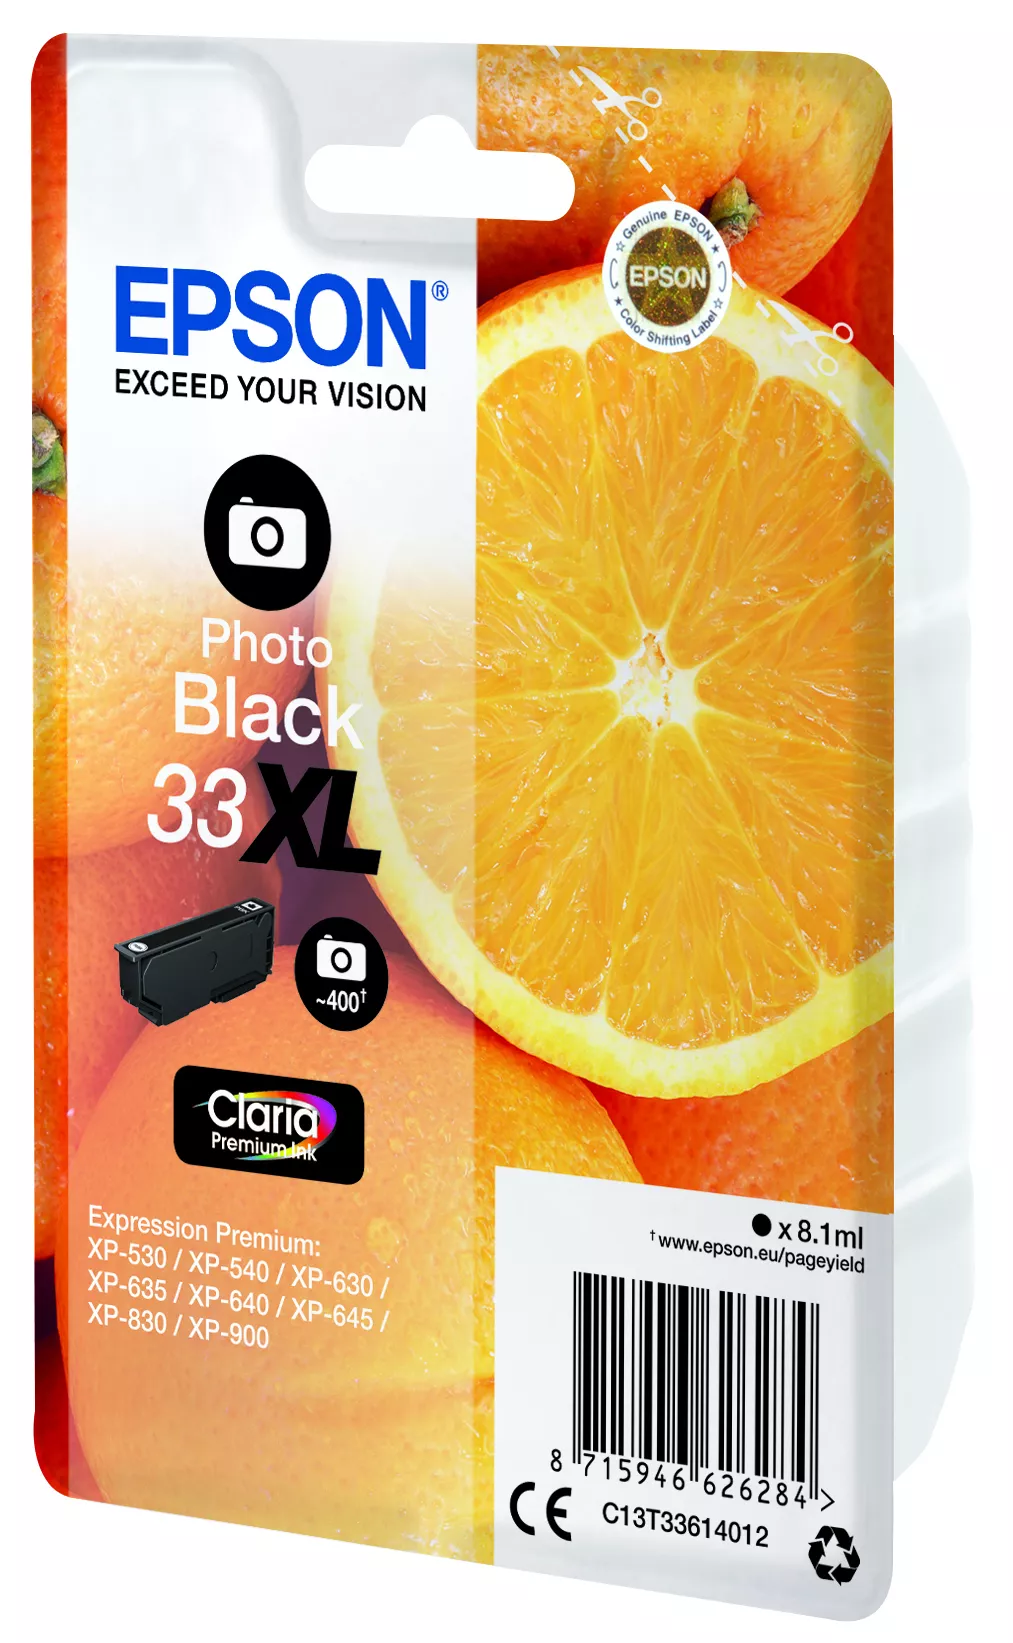 Vente Epson Cartouche "Oranges" - Encre Claria Premium N Epson au meilleur prix - visuel 4